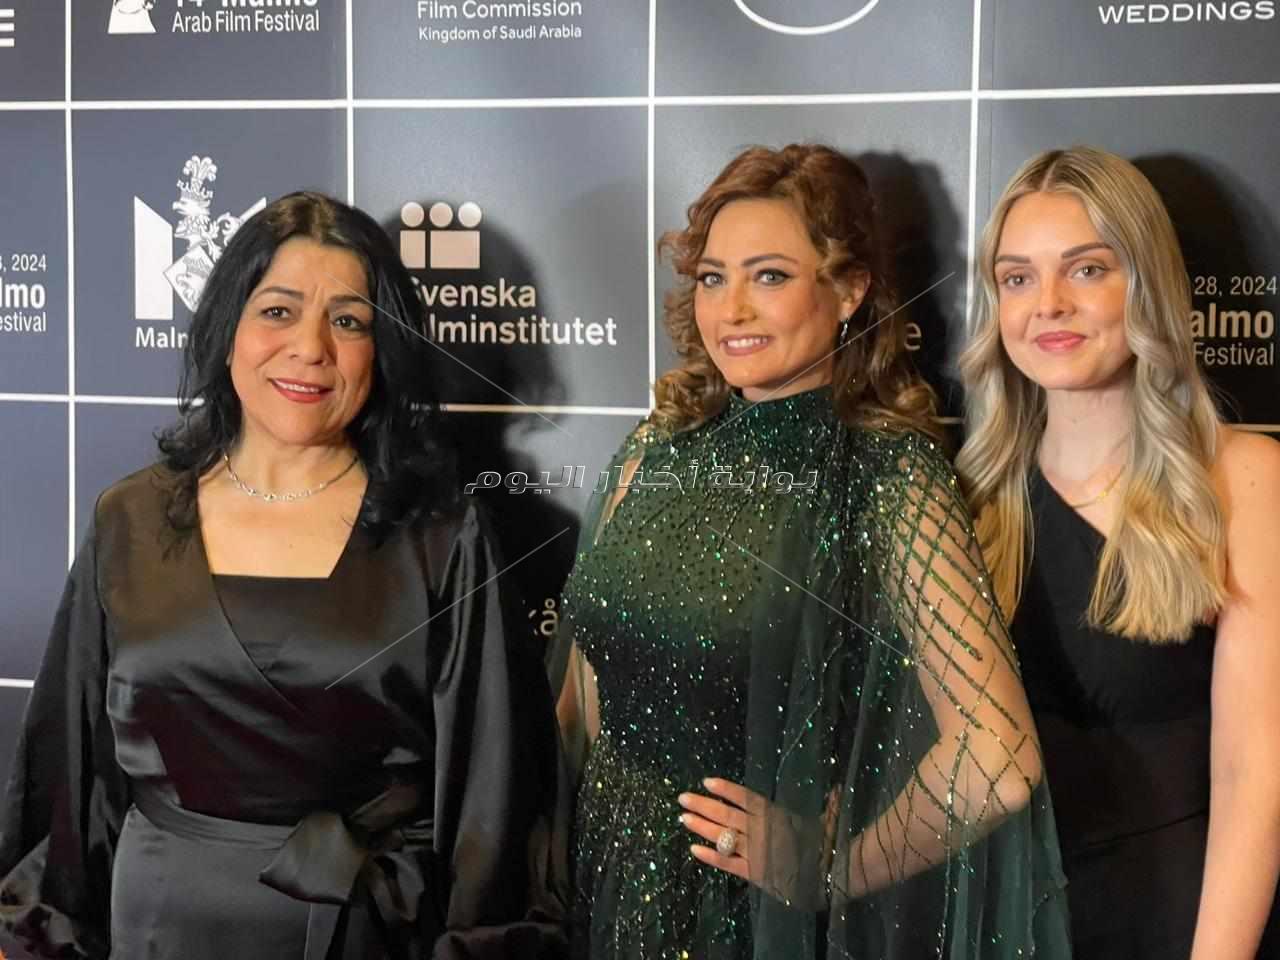 افتتاح مهرجان «مالمو» للسينما العربية بفيلم وداعًا جوليا بحضور صناعه